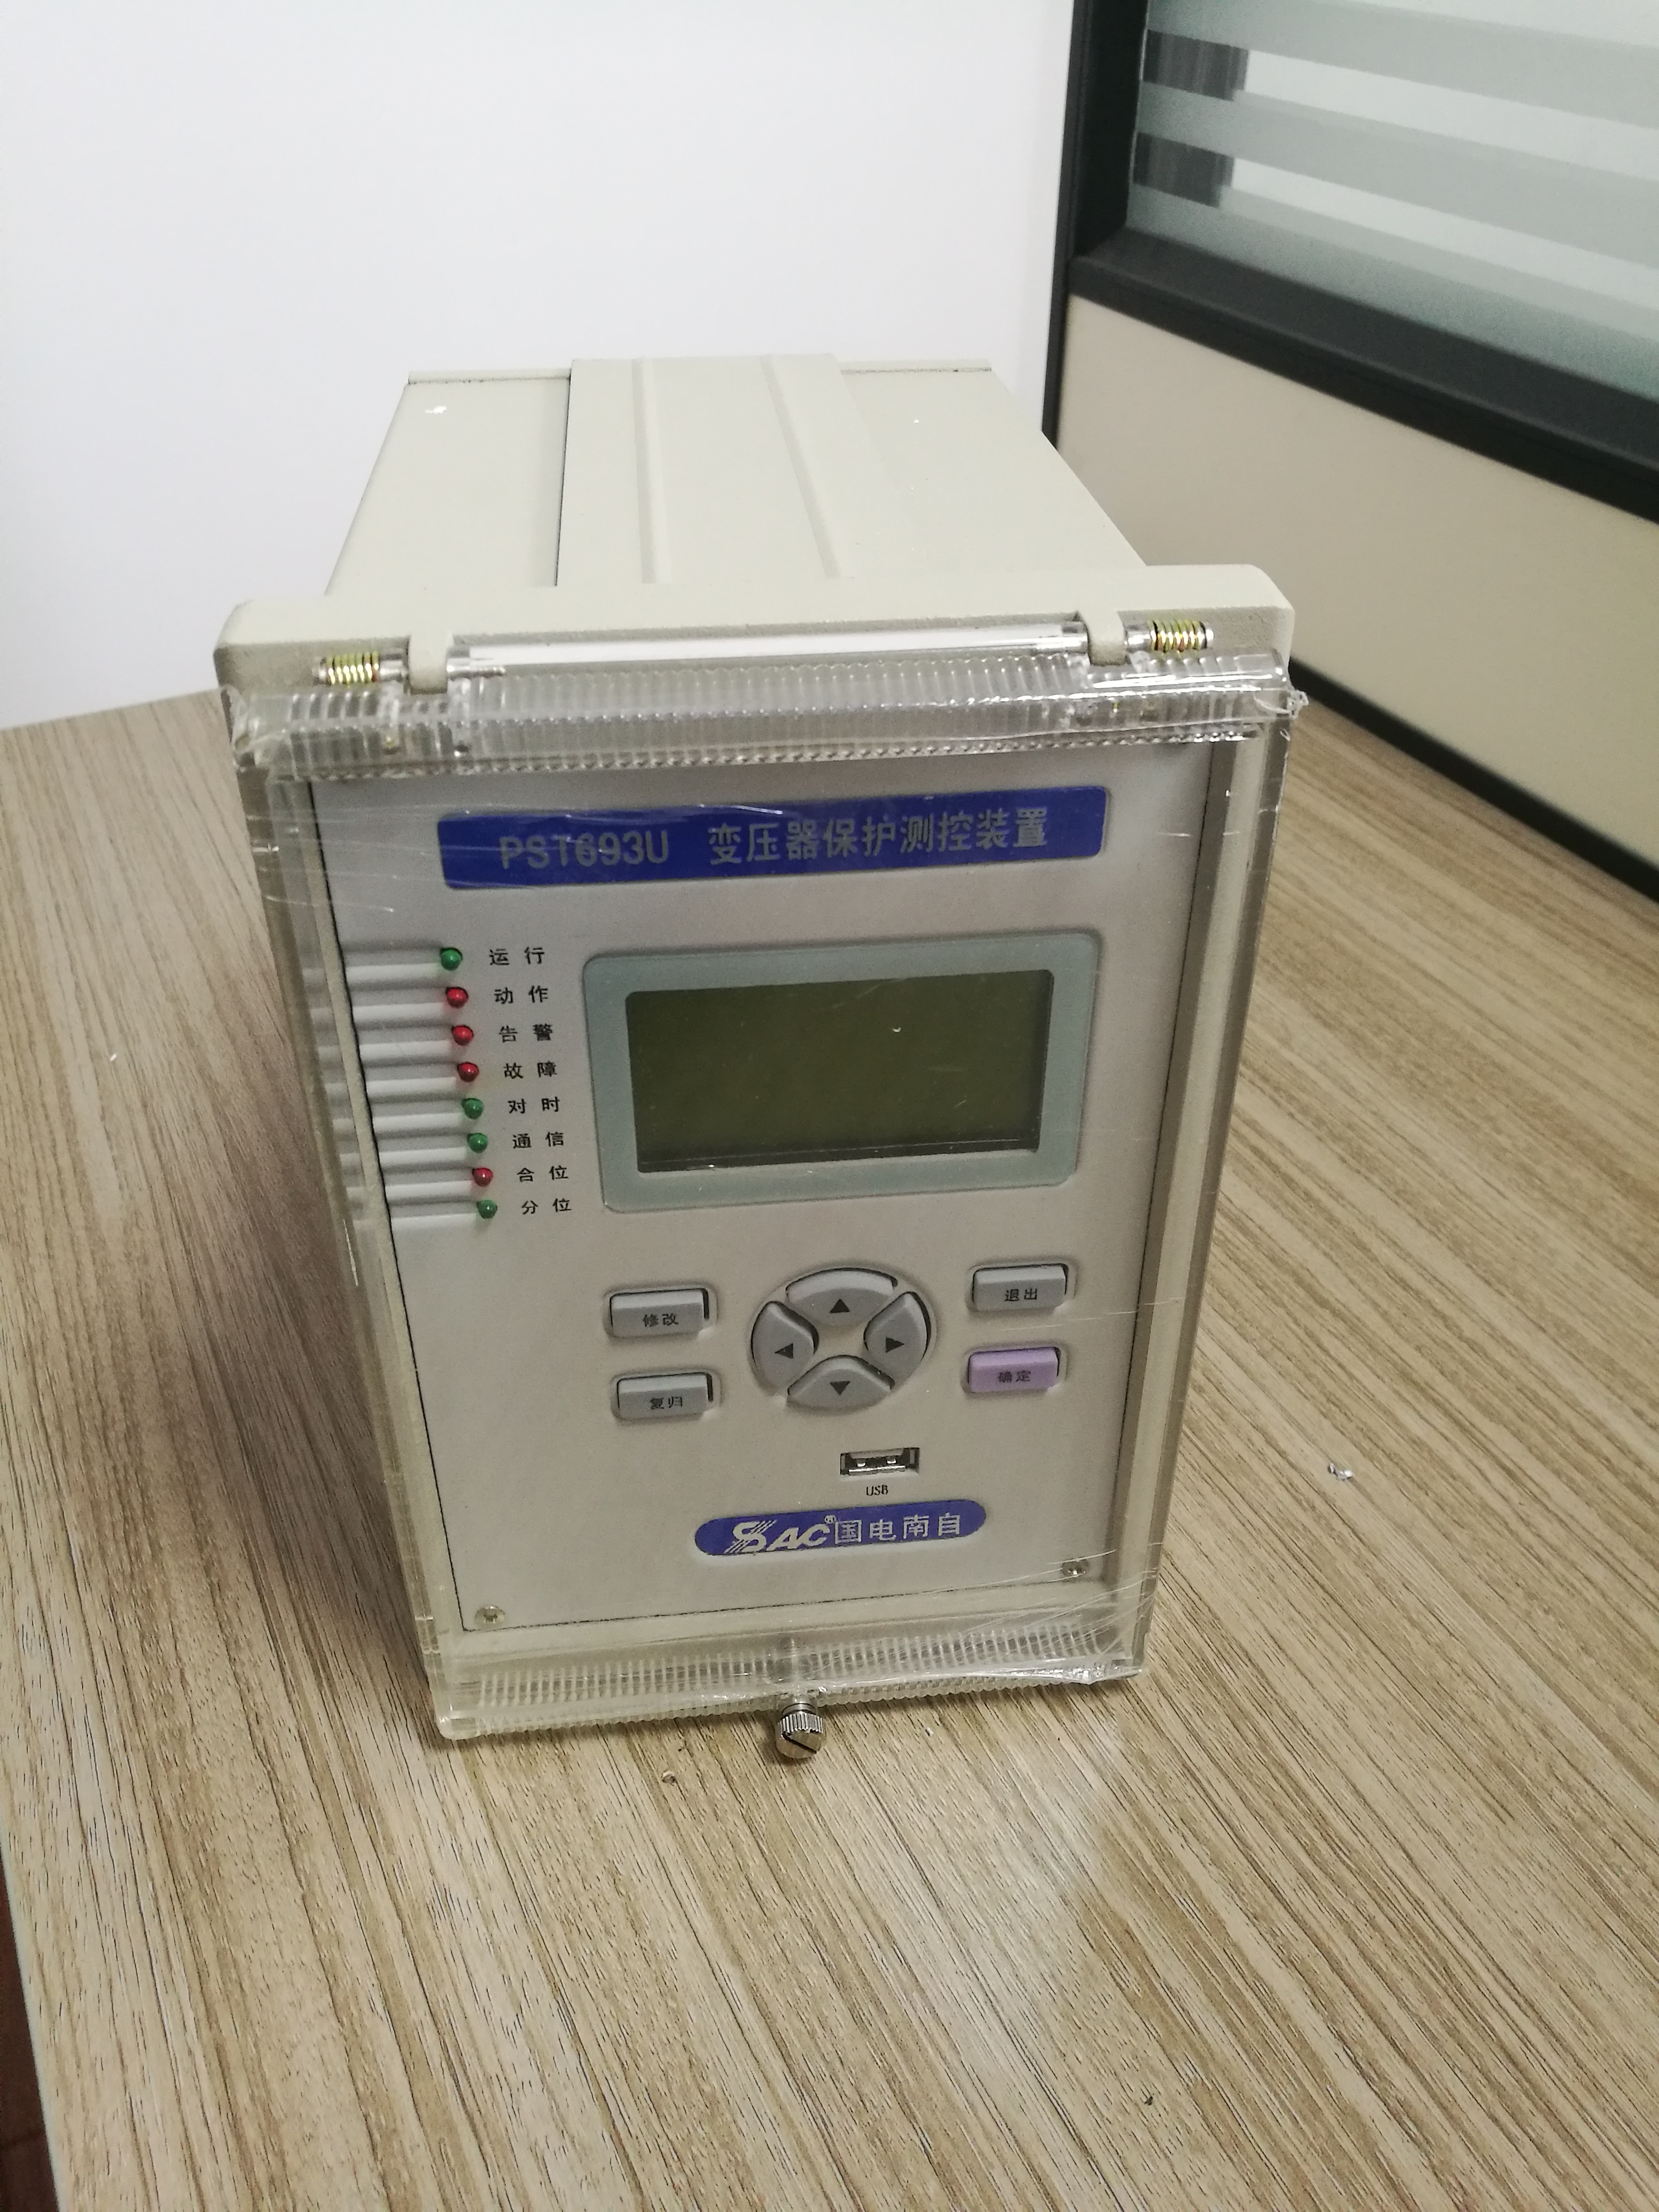 国电南自PST-691U变压器差动保护装置